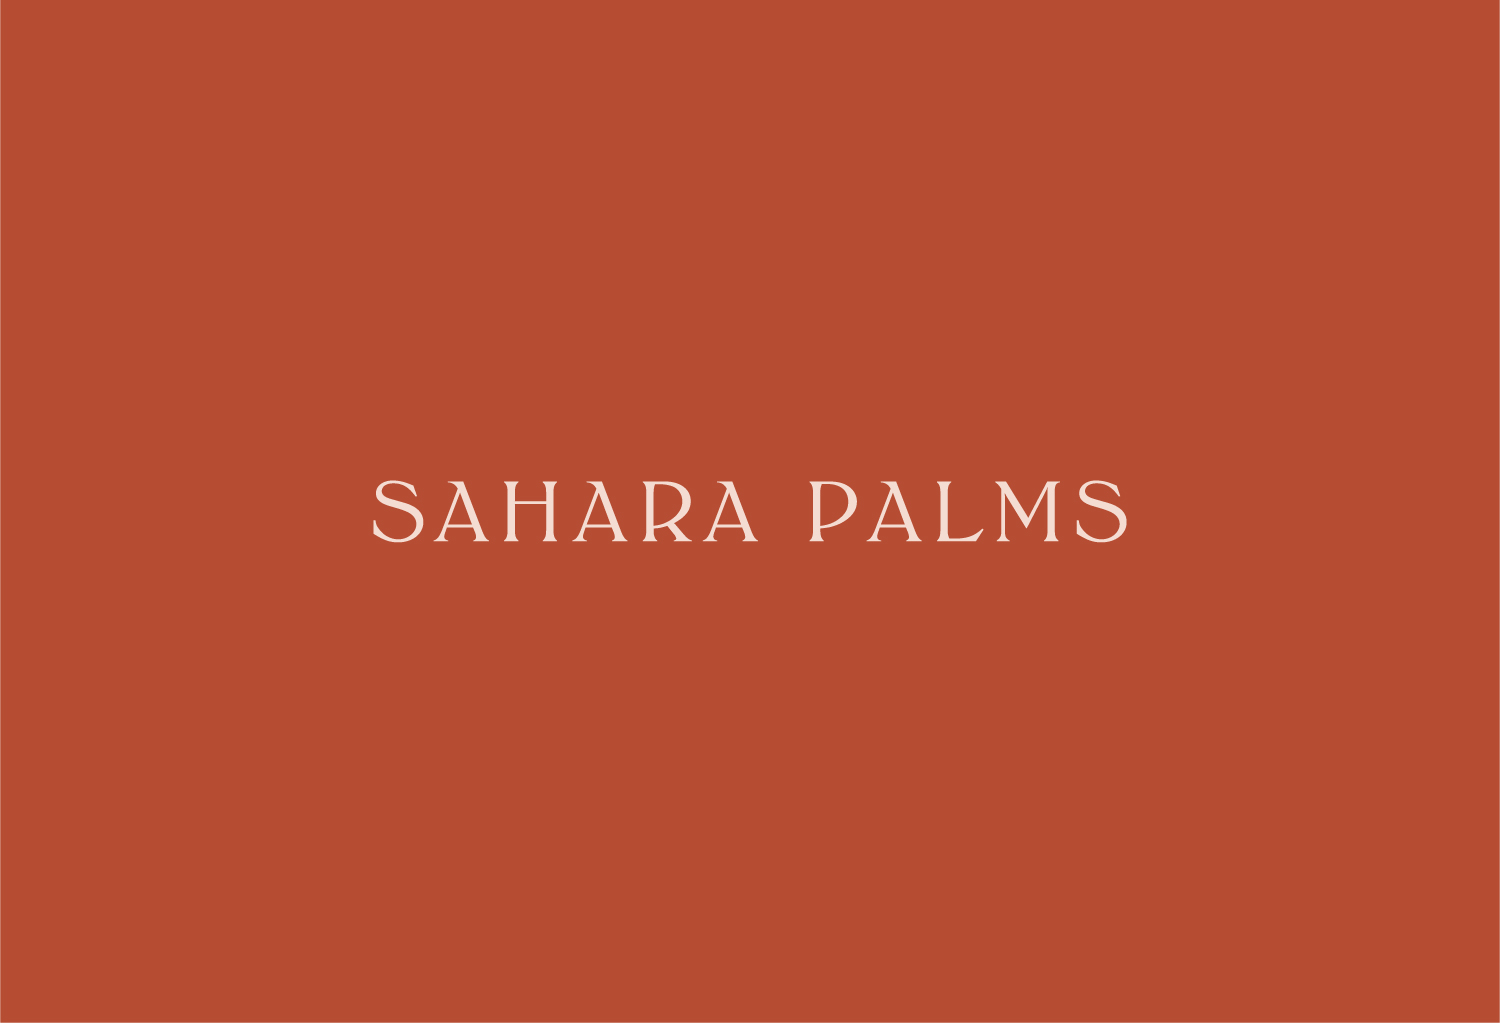 Sahara Palms logo by Now or Never Design